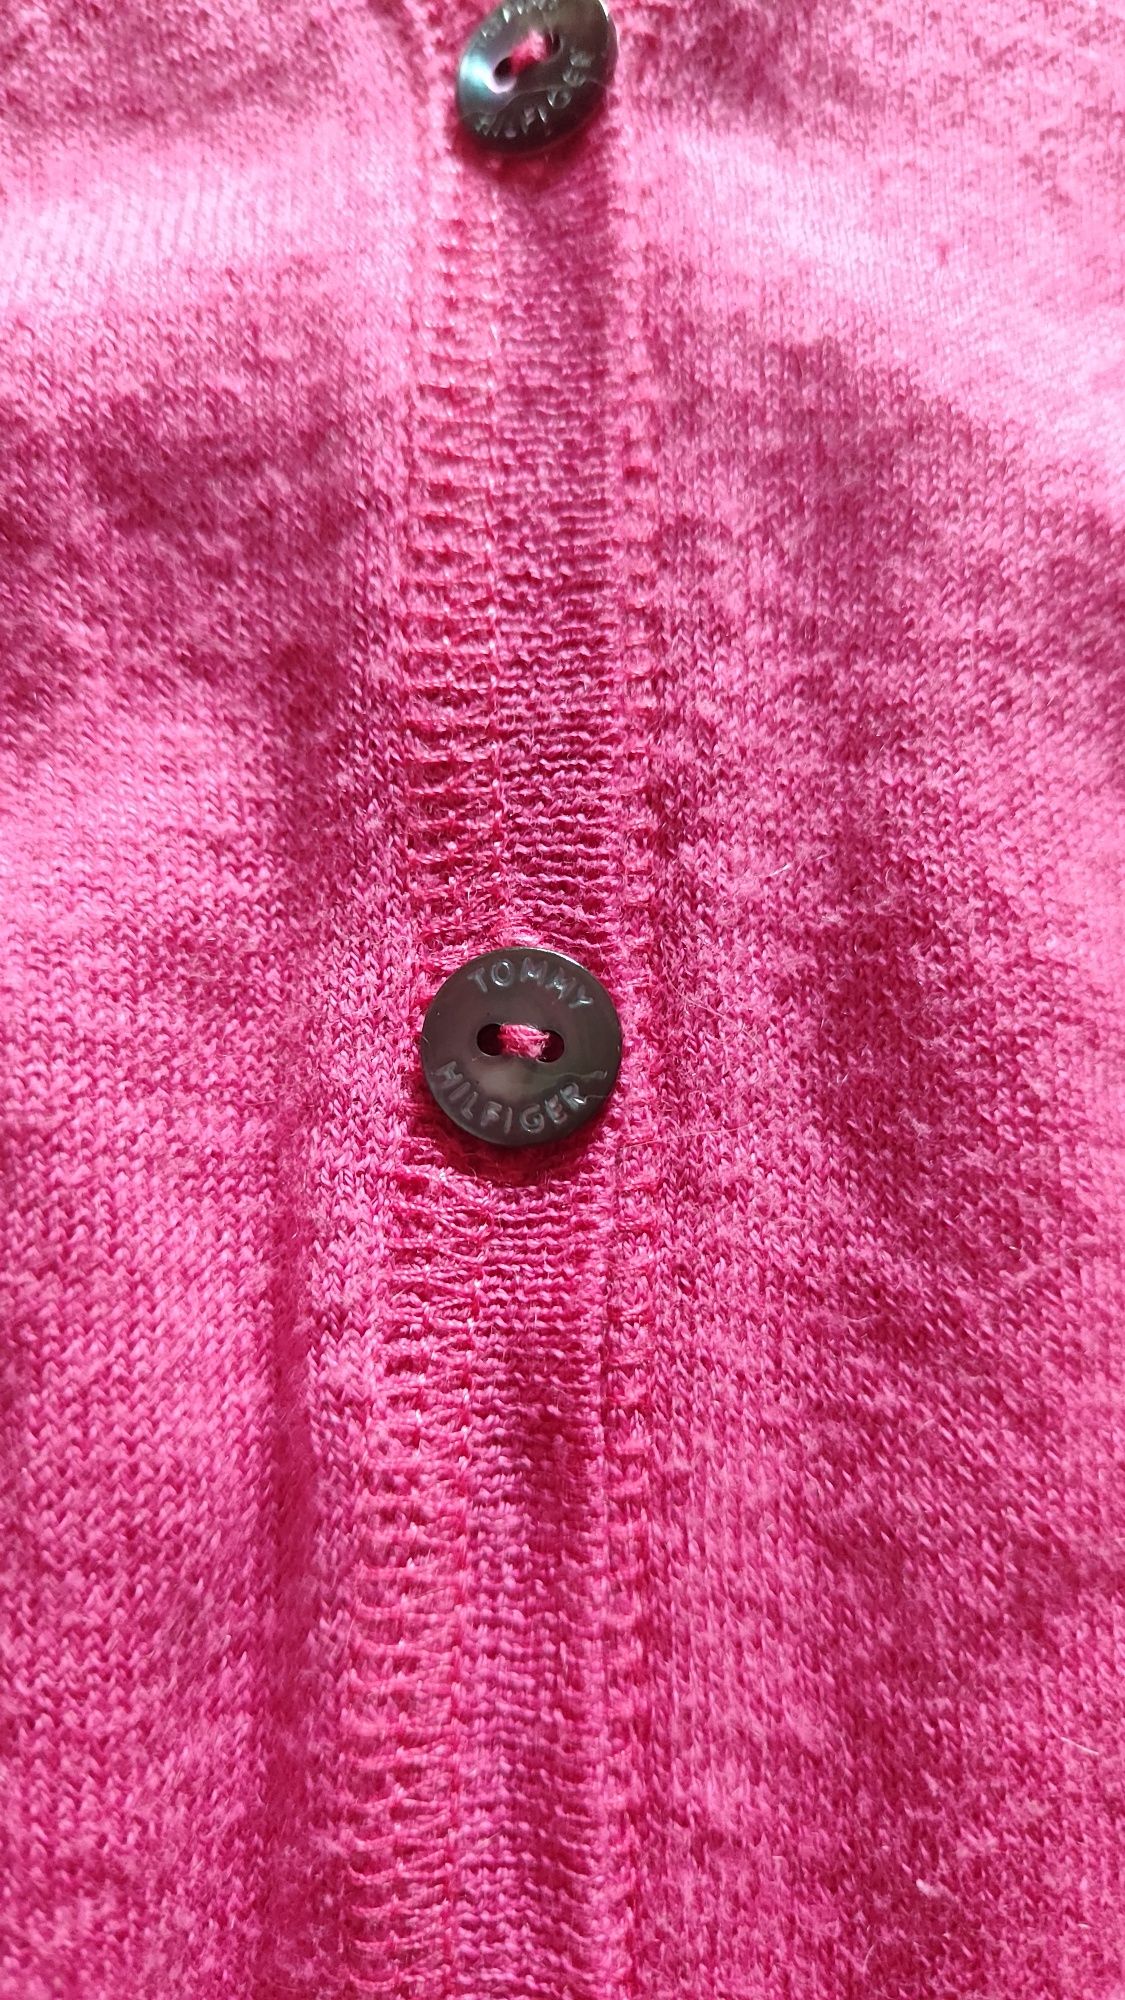 Cena ostateczna! Różowy sweterek Tommy Hilfiger rozmiar S/M bawełna ka